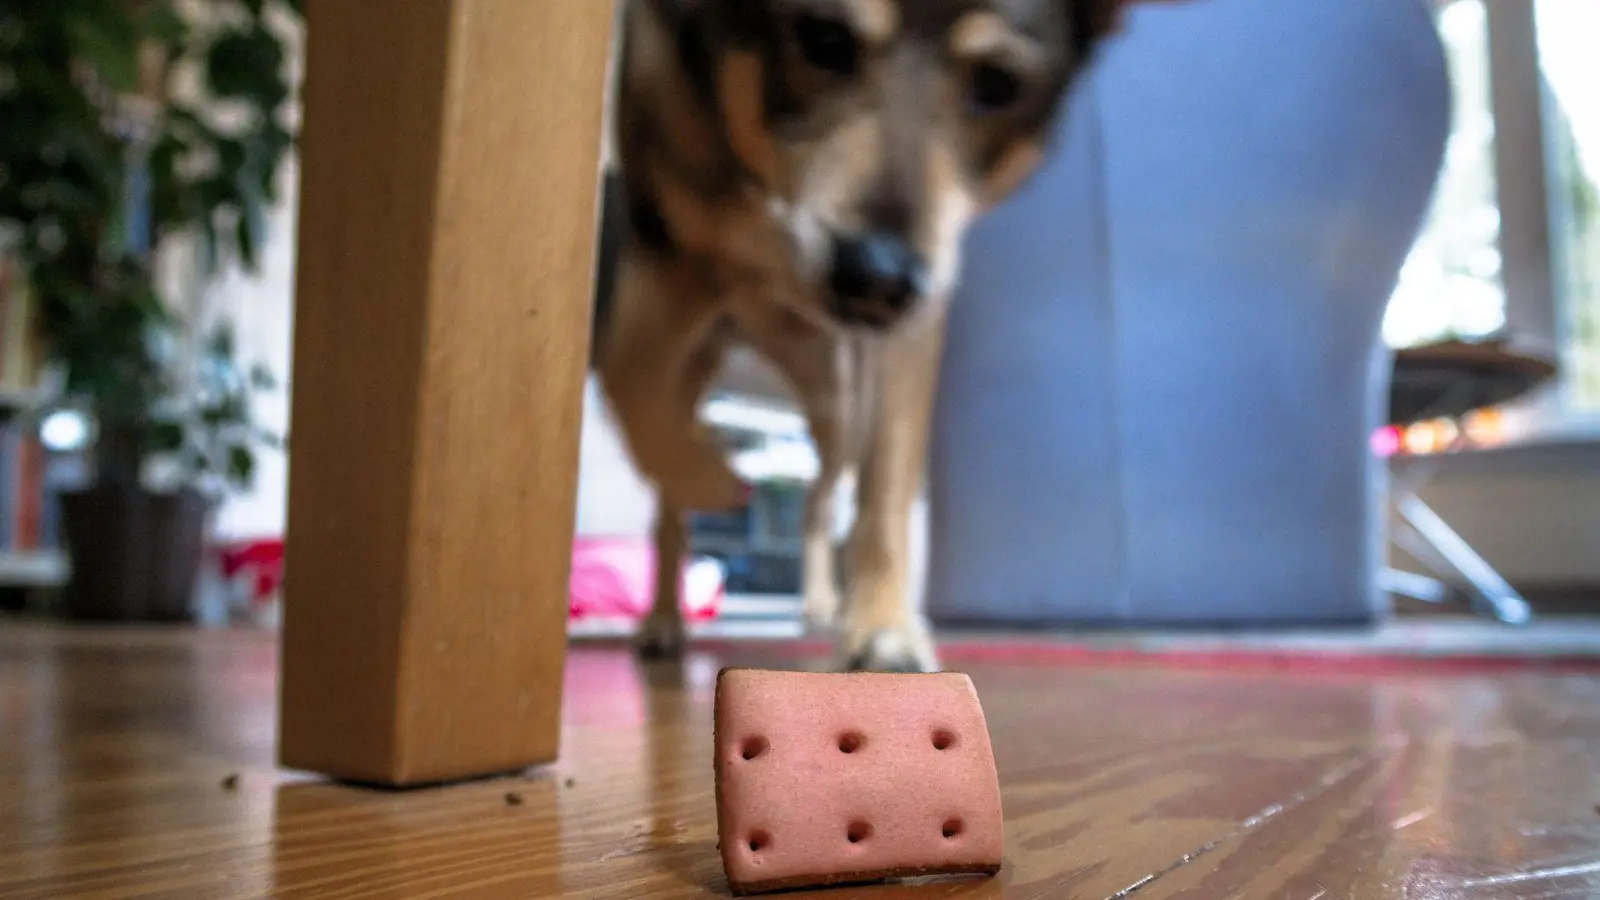 Auch drinnen für Auslastung sorgen: Ein Hund sucht in der Wohnung nach versteckten Leckerlis. (Foto: Markus Scholz/dpa/dpa-tmn)